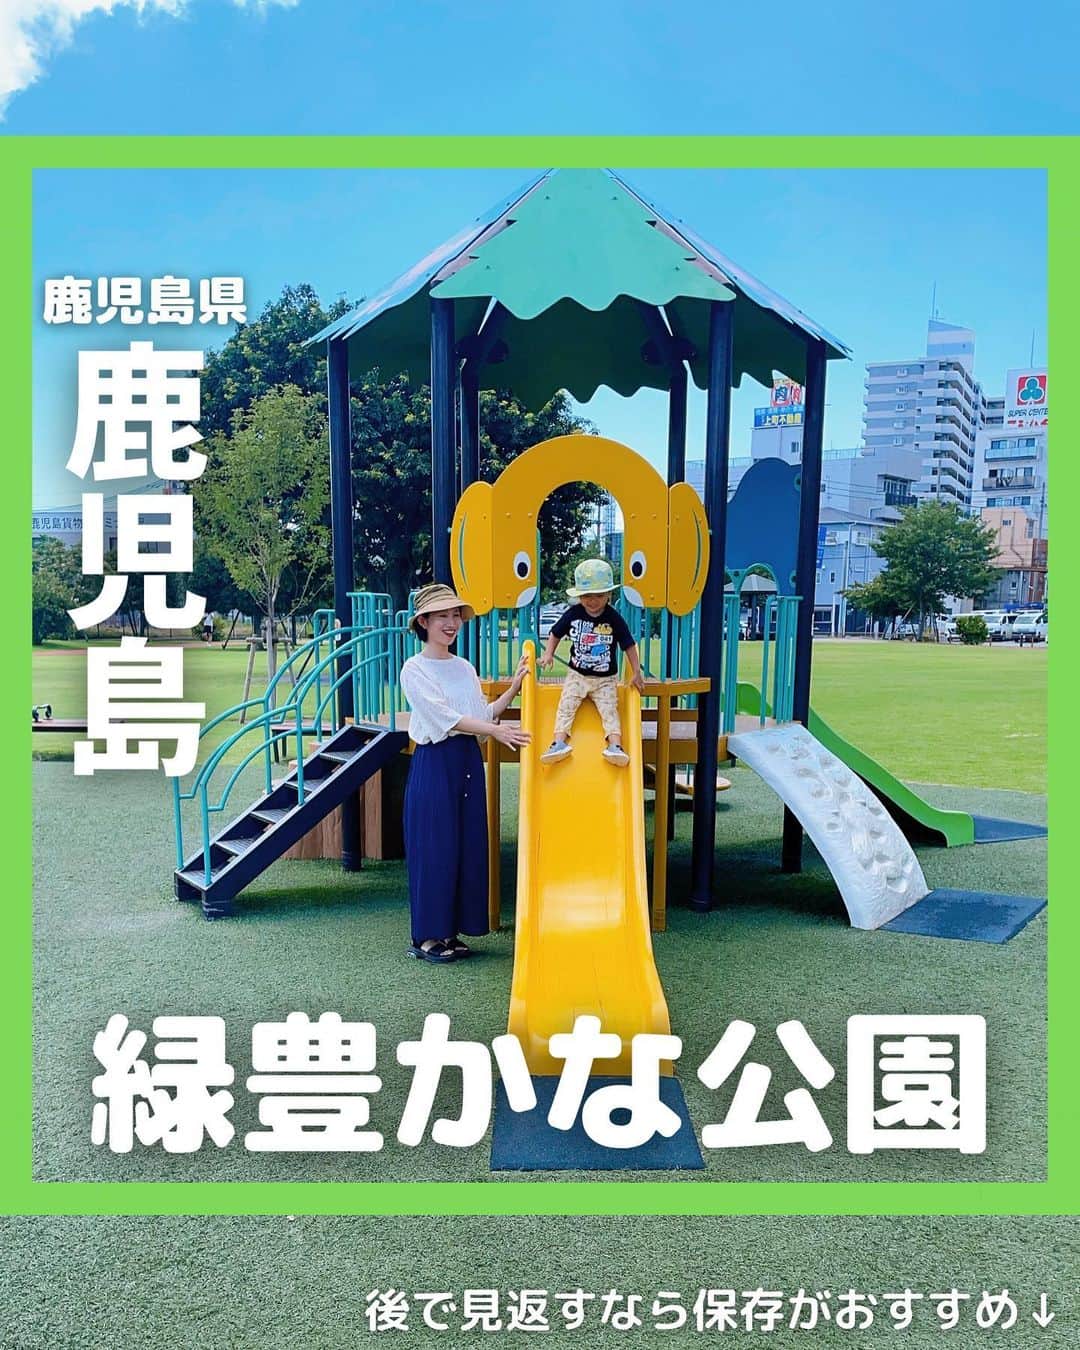 山下智子のインスタグラム：「@tomoko__yamashita ←鹿児島子連れ・ママが楽しめるスポットやランチ  先日、かんまちあで開催されていたマルシェへ✨ そのついでに、かんまちあ内にある 上町の杜公園でも遊びました⛲️  公園内は芝生や木々に囲まれて、とても癒される空間🌳 遊具も幼児用と児童用があって、子どもも大満足でした✨  イベント会場と公園が隣接しているので、 子どもも楽しめて、親としてはありがたかっです🤸‍♂️ 公園遊びをしつつマルシェで買い物もできました🛍️  かんまちあのインスタグラムでは 開催されるイベント情報が掲載されているので、 そのイベントに合わせて公園を訪れるのもおすすめです🙌  .......................................... ◆𝐋𝐨𝐜𝐚𝐭𝐢𝐨𝐧◆ かんまちあ(上町の杜公園) @kanmachia  📍鹿児島県鹿児島市浜町2-20 🚘駐車場有 ..........................................  #tomoko__yamashita_kagoshima 「鹿児島」に関する投稿は、 このハッシュタグで検索！  ..........................................  ◆𝑻𝒉𝒂𝒏𝒌𝒔◆ 最後まで読んでくれてありがとうございます❤️  このアカウントは、 鹿児島の子連れスポット・ランチを 発信しています♪  ／ フォロー・いいね・ コメント・保存大歓迎♪ 喜びます🙋‍♀️ ＼  @tomoko__yamashita  ..........................................   #鹿児島 #kagoshima #鹿児島子育て #鹿児島子連れ #鹿児島子連れお出かけ #鹿児島ママ #鹿児島公園 #かんまちあ #上町の杜公園 #鹿児島ママと繋がりたい」